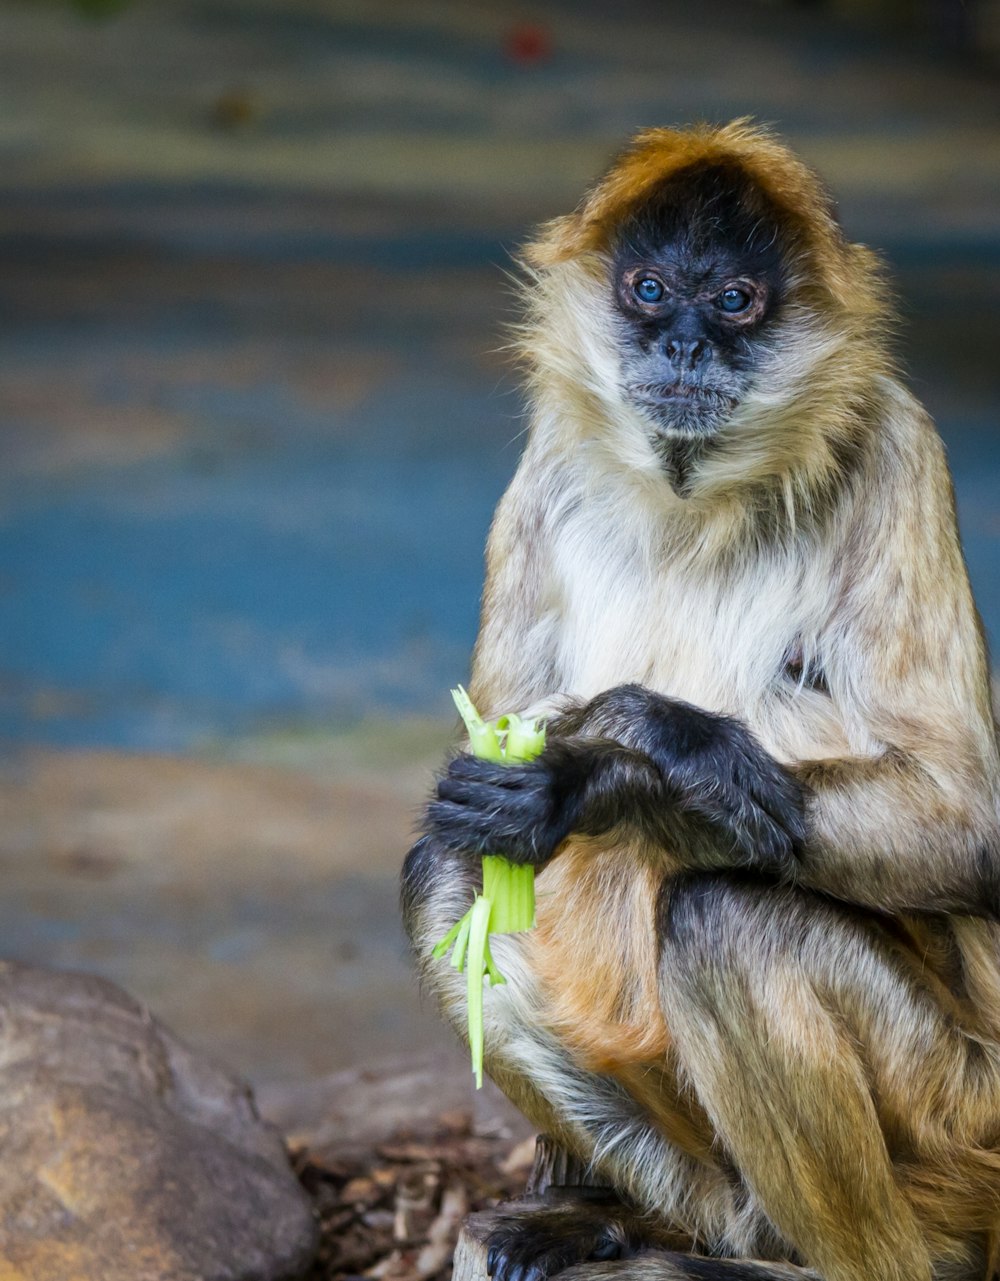 brown monkey eating vegetable